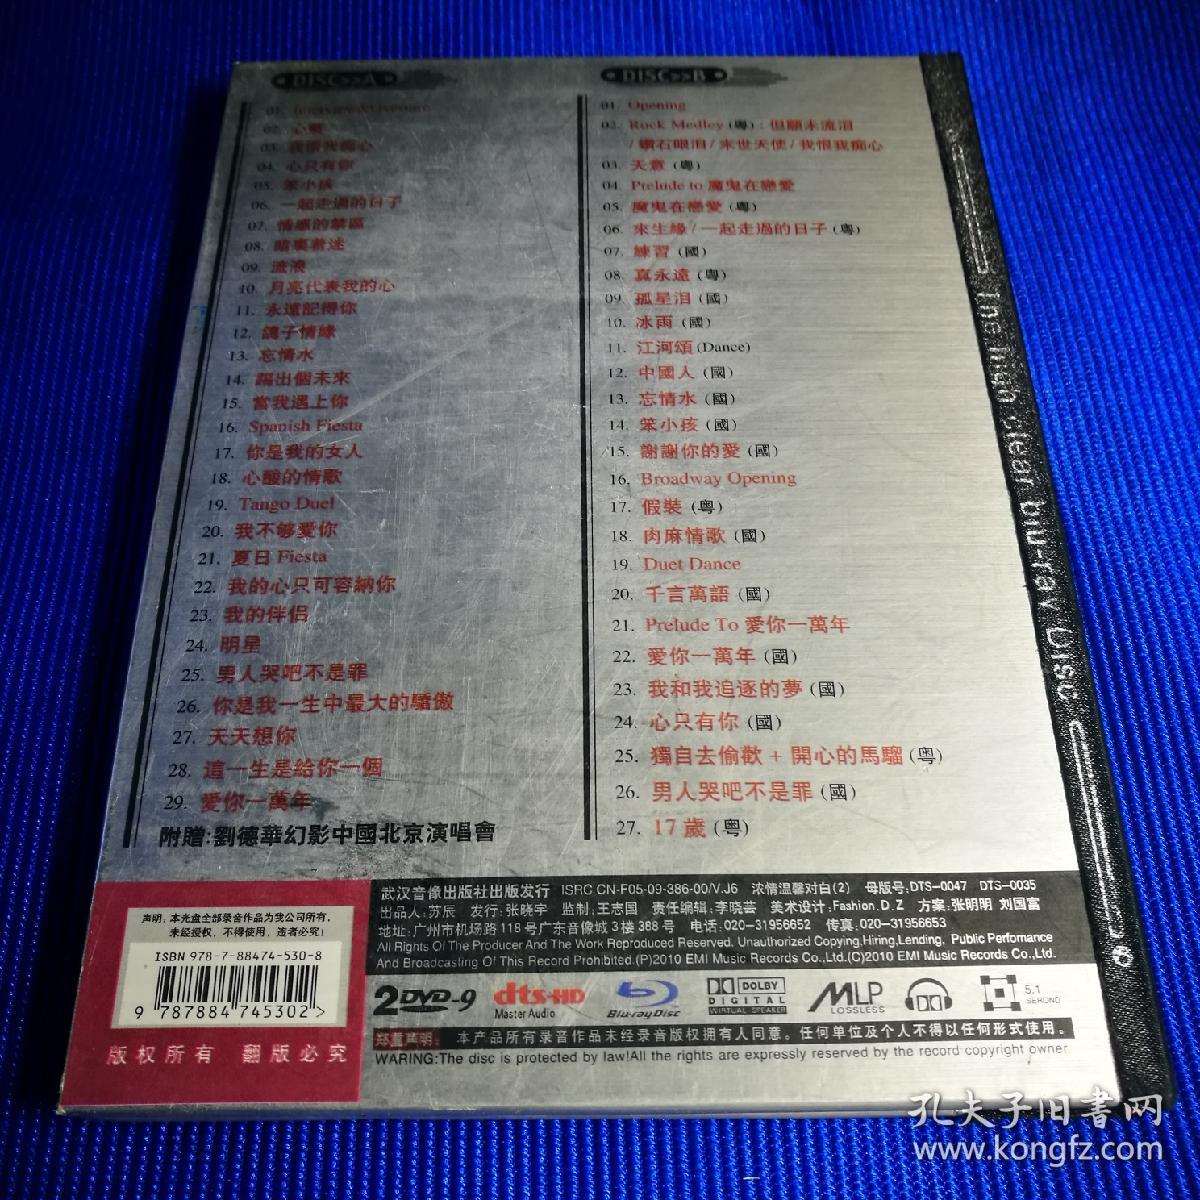 歌碟DVD-9 2001刘德华Fiesta演唱会 附赠 刘德华幻影中国北京演唱会 (2碟装)